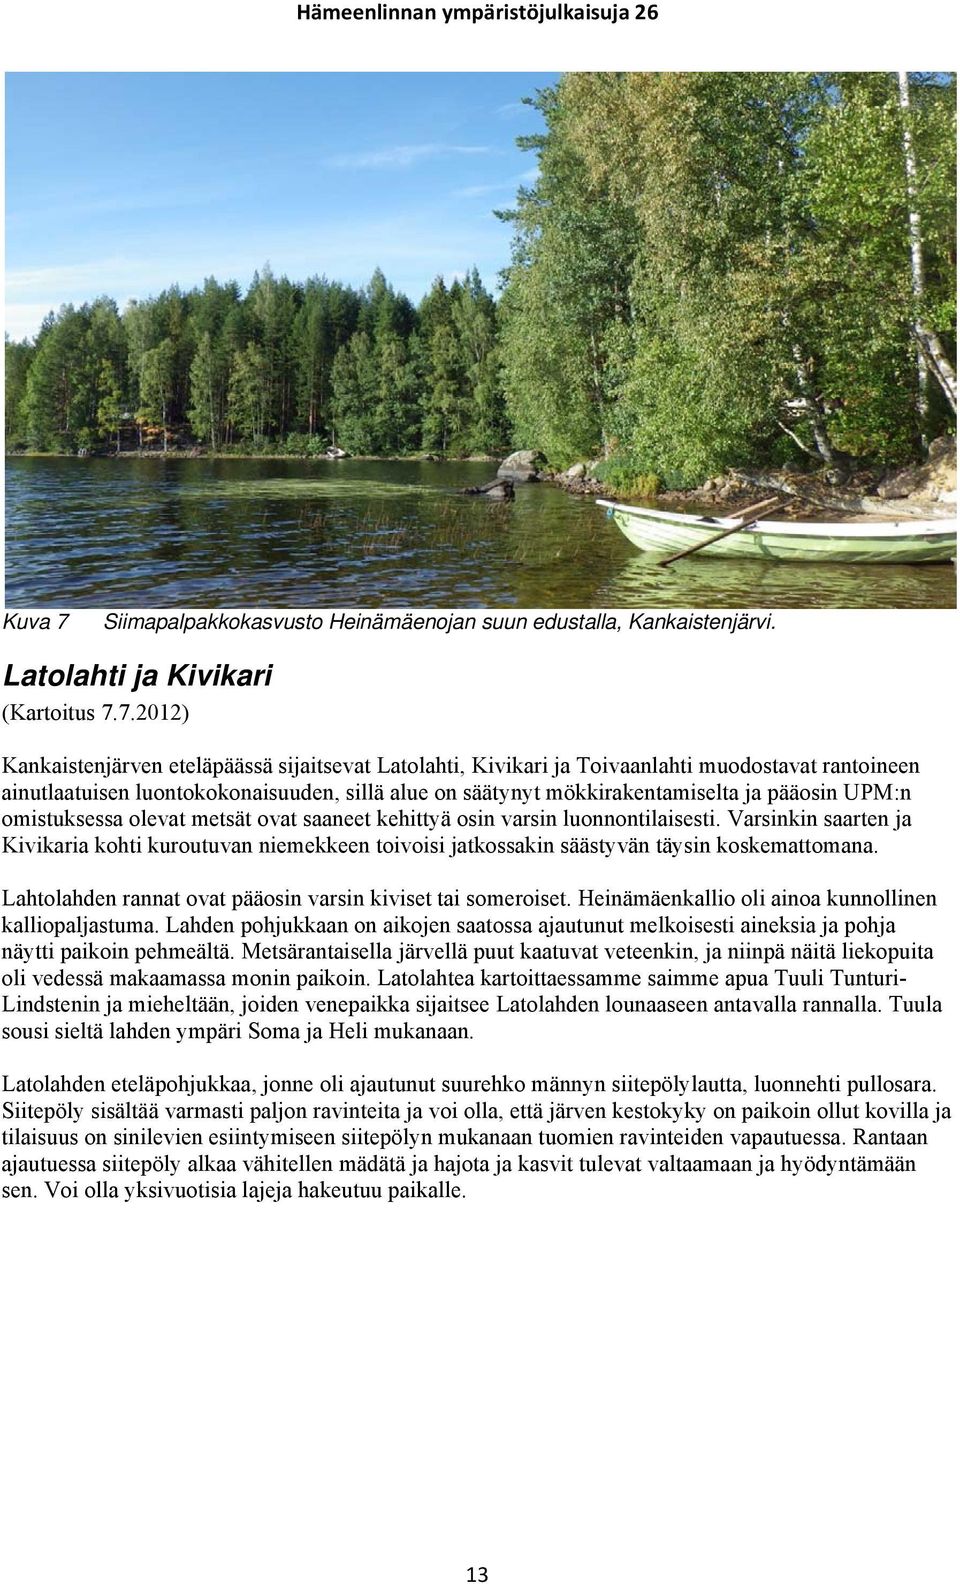 7.2012) Kankaistenjärven eteläpäässä sijaitsevat Latolahti, Kivikari ja Toivaanlahti muodostavat rantoineen ainutlaatuisen luontokokonaisuuden, sillä alue on säätynyt mökkirakentamiselta ja pääosin